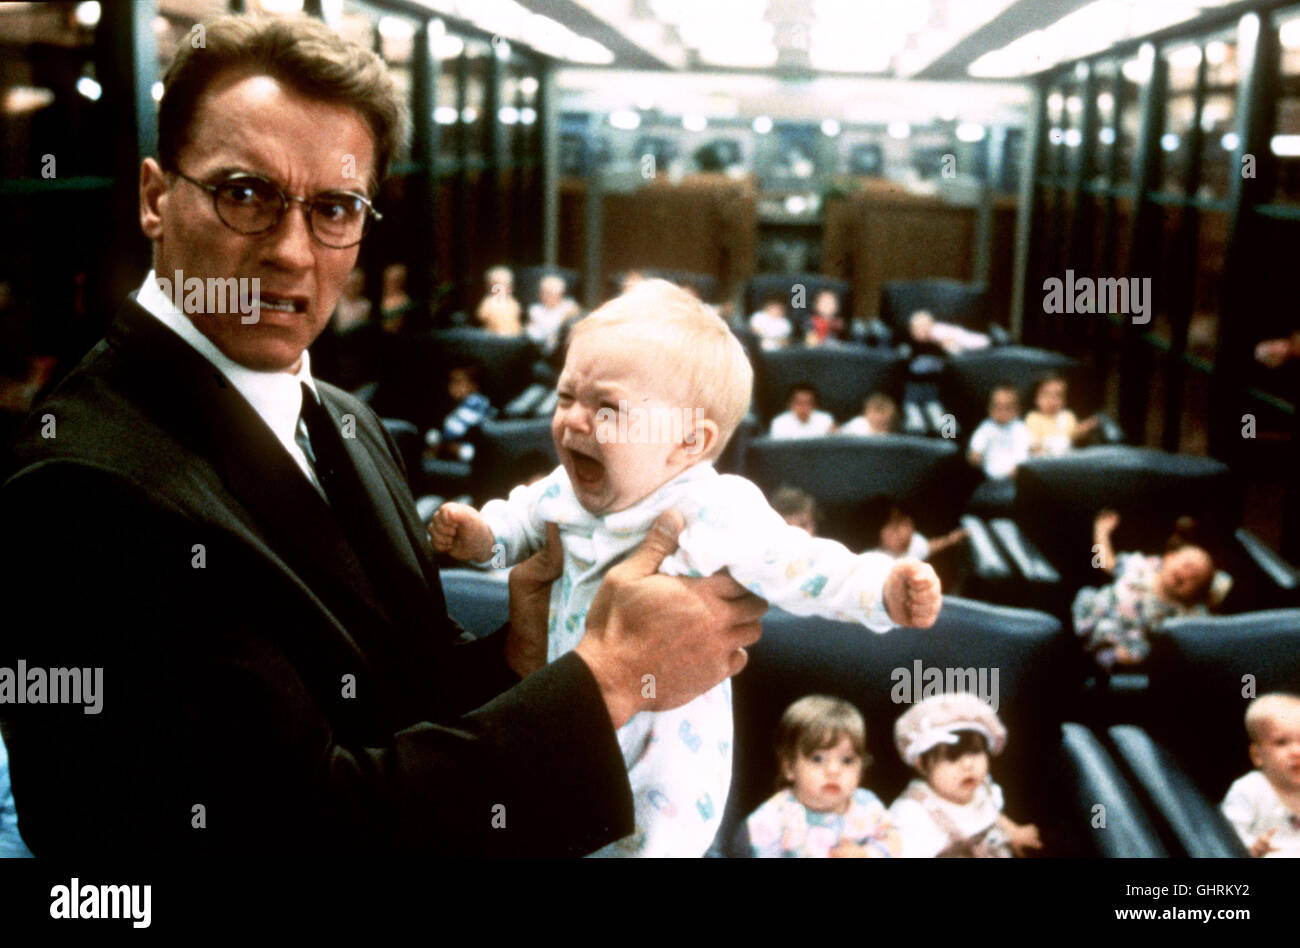 junior - Arnold Schwarzenegger ist schwanger. Als Wissenschaftler Dr. Alexander Hesse läßt er sich ein Embryo einpflanzen, um ein Medikament zu testen. Die Schwangerschaft bringt den Hormonhaushalt des 'Terminators' ganz schön durcheinander. Foto: Dr. Alexander Hesse (ARNOLD SCHWARZENEGGER). Regie: Ivan Reitman aka. Junior Stock Photo